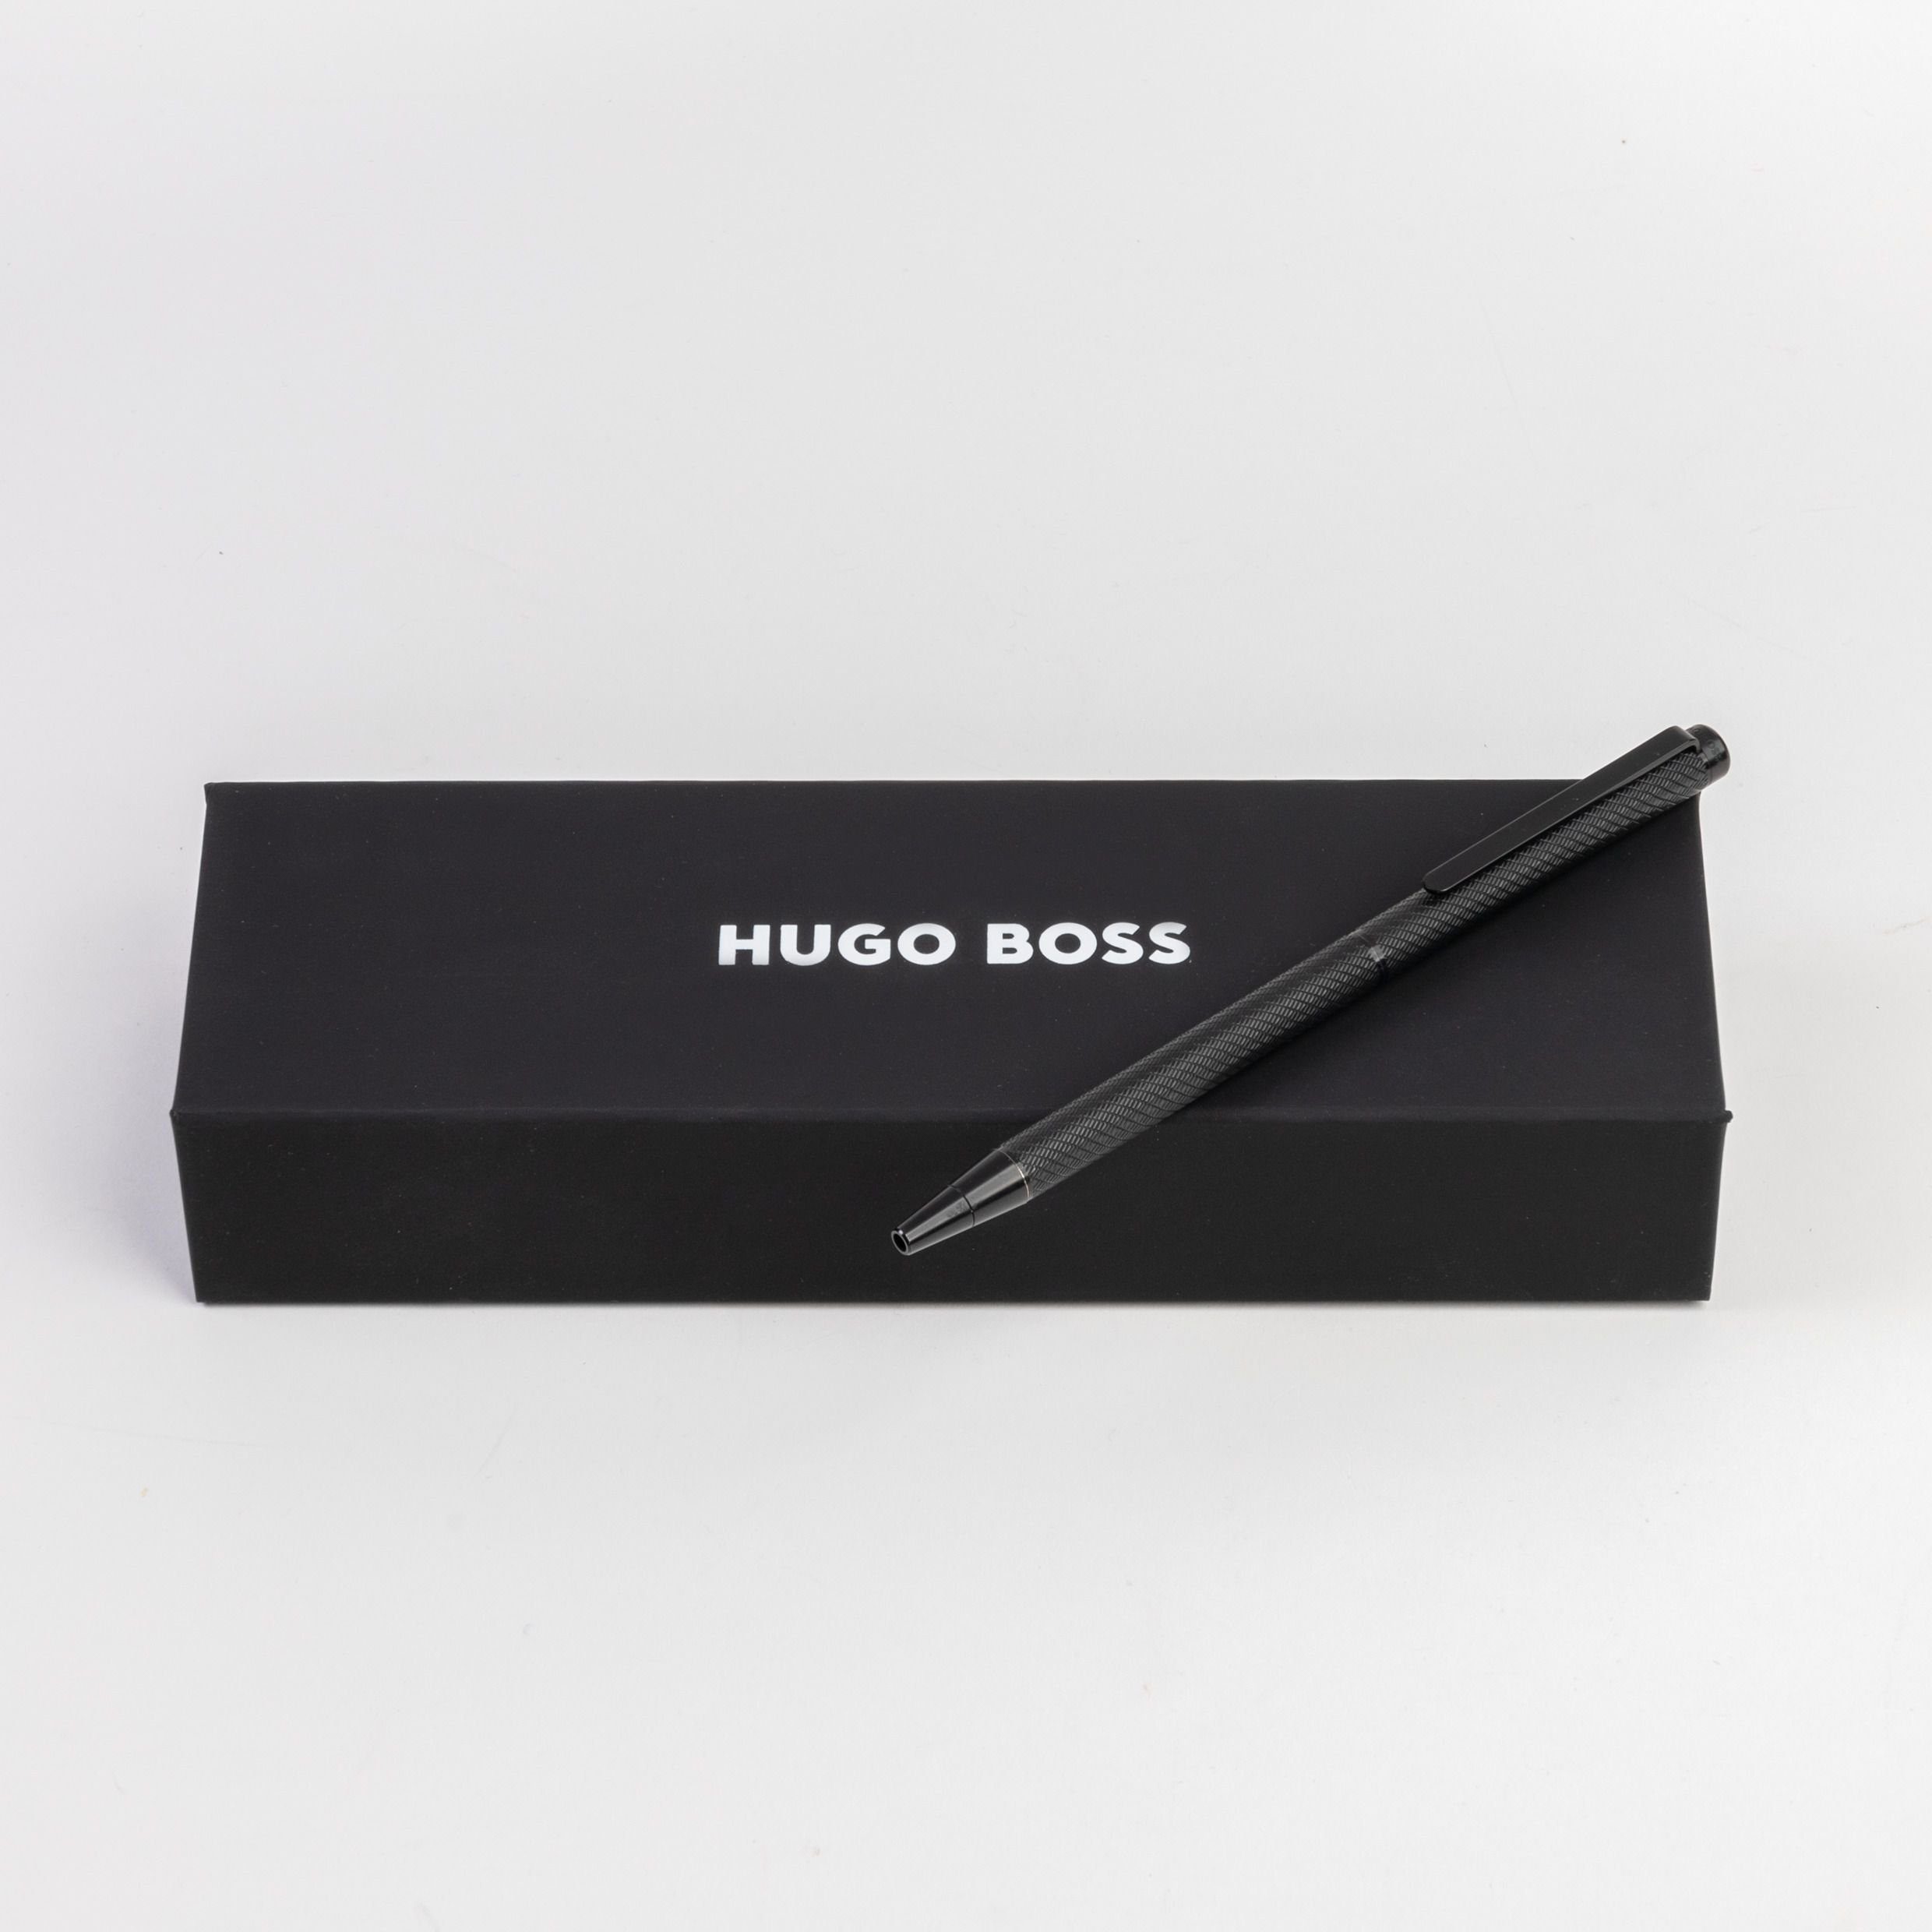 Pen Cloud BOSS schlanker Hugo Set) Kugelschreiber Kugelschreiber Schwarz, Black (kein Ballpoint Boss